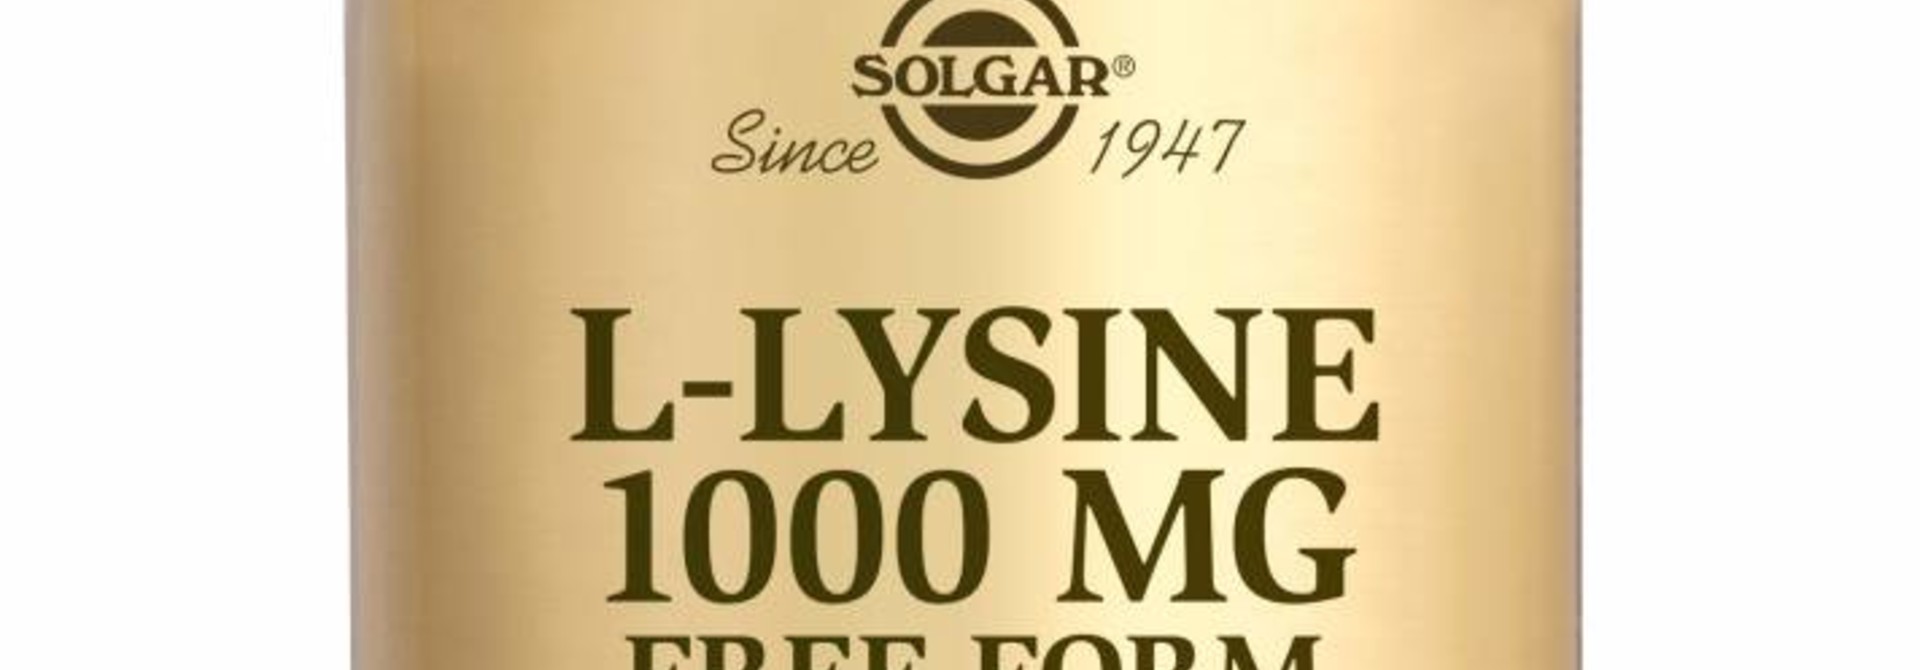 L-Lysine 1000 mg 100 tabletten